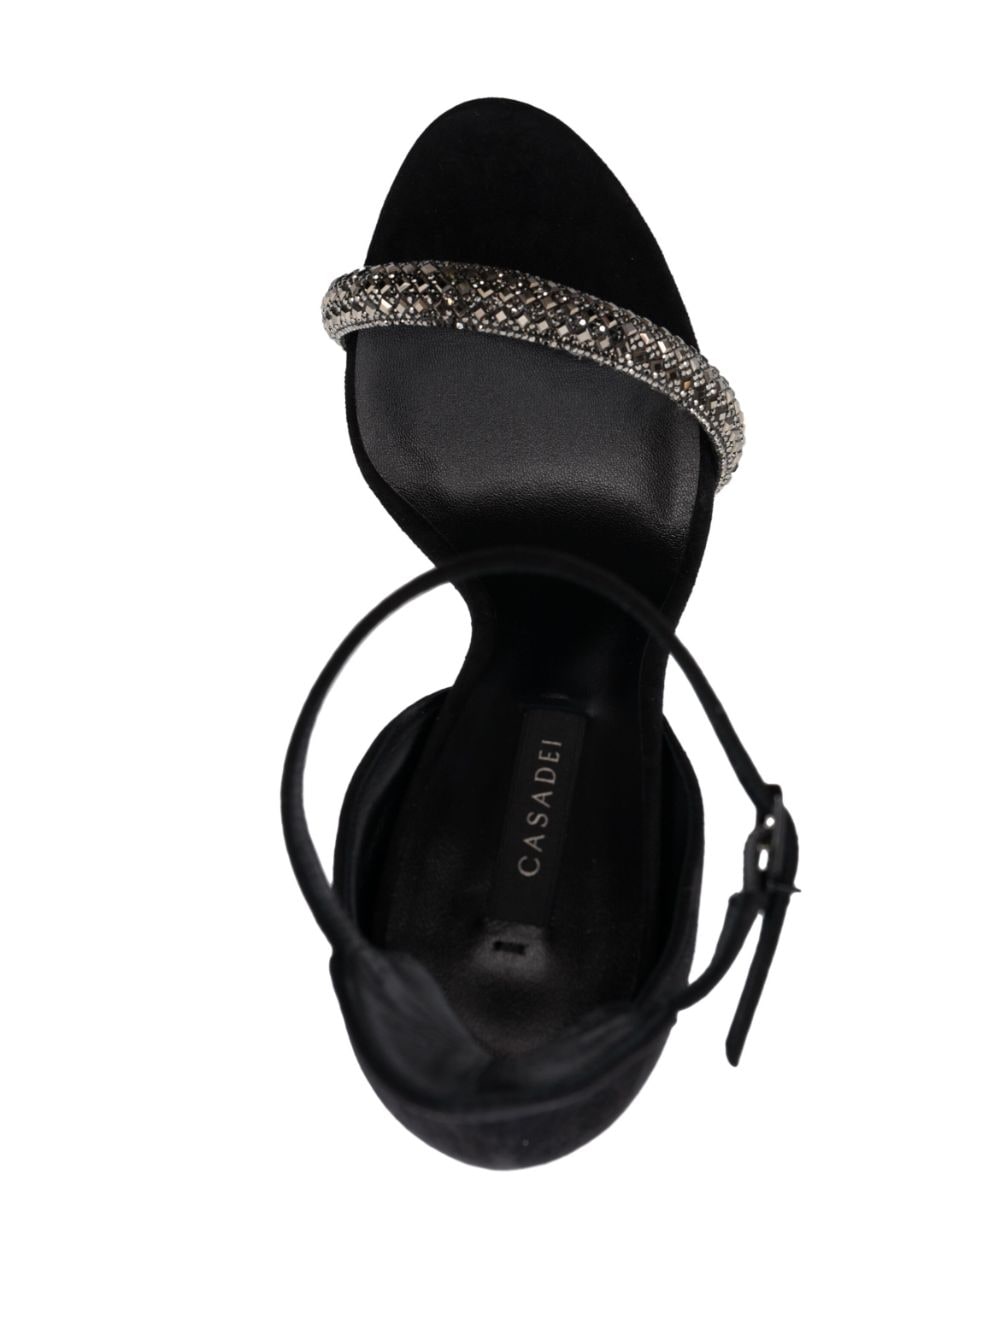 Shop Casadei Stratosphere 120mm Crystal-embellished Sandals In Black